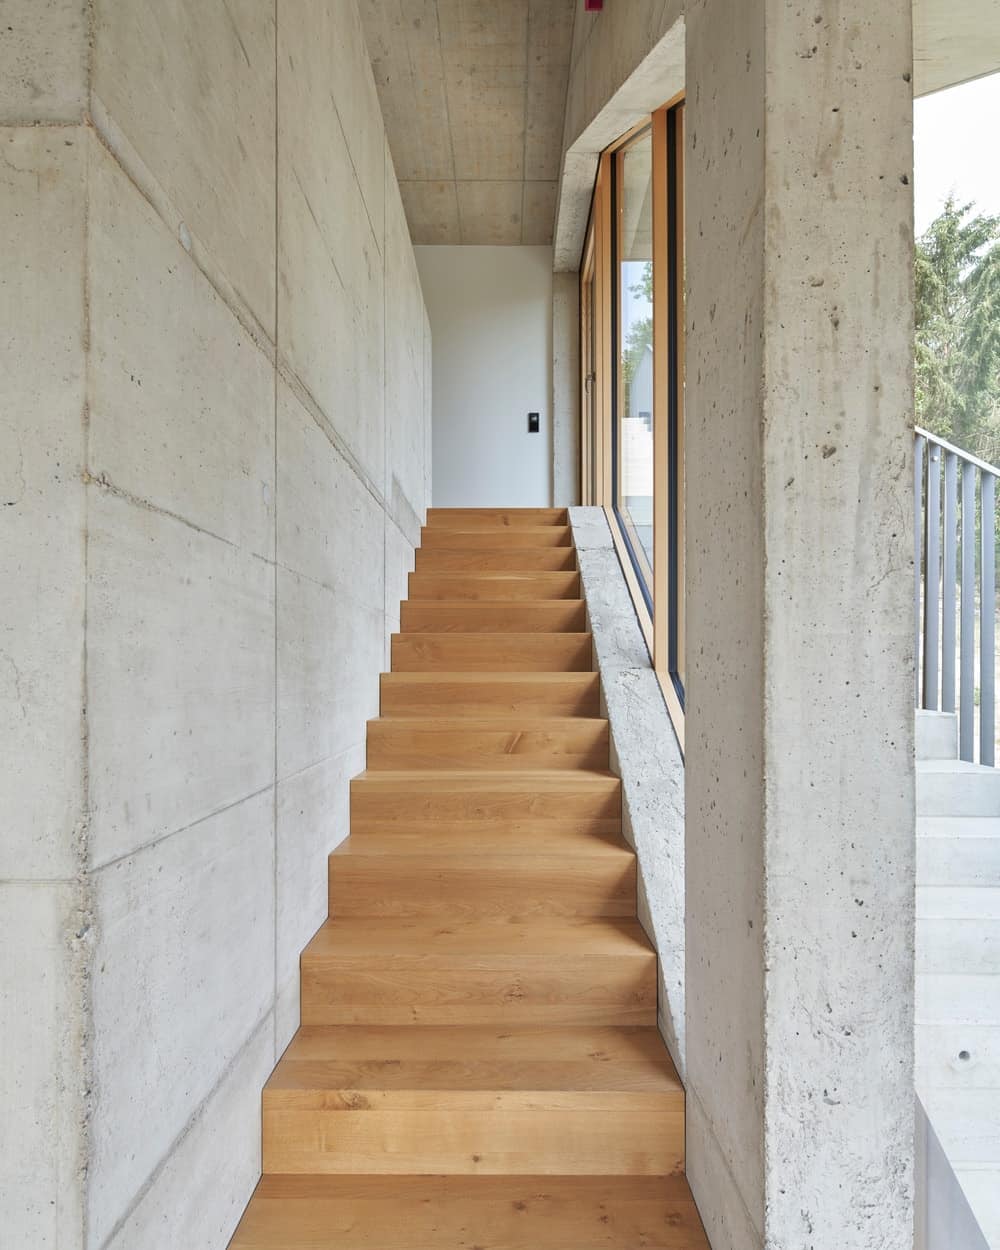 这是室内楼梯的景观，楼梯的木质调阶与硬木地板相匹配，并被玻璃墙照亮。